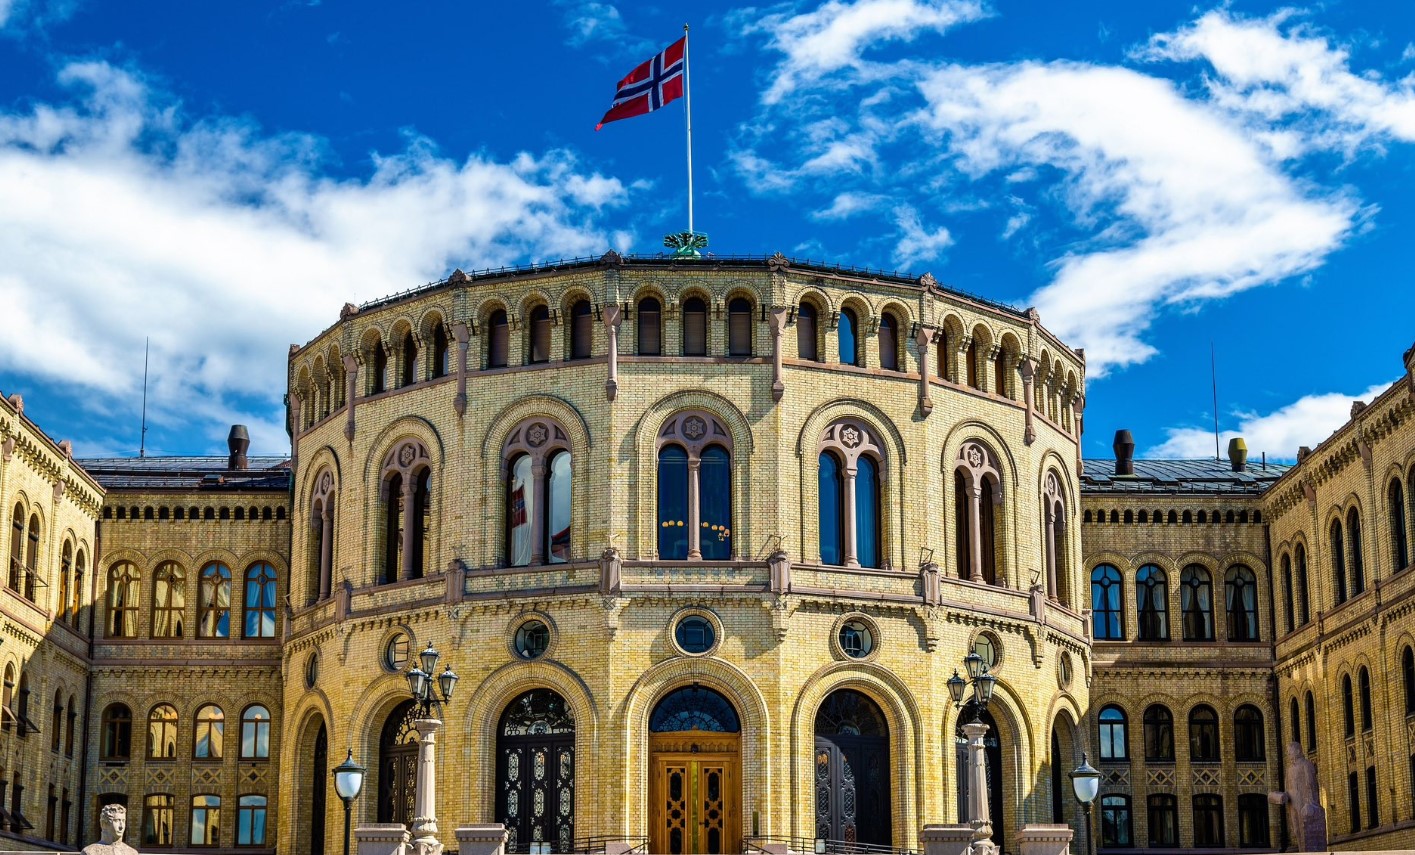 Νορβηγία: Απειλή για βόμβα στο κοινοβούλιο